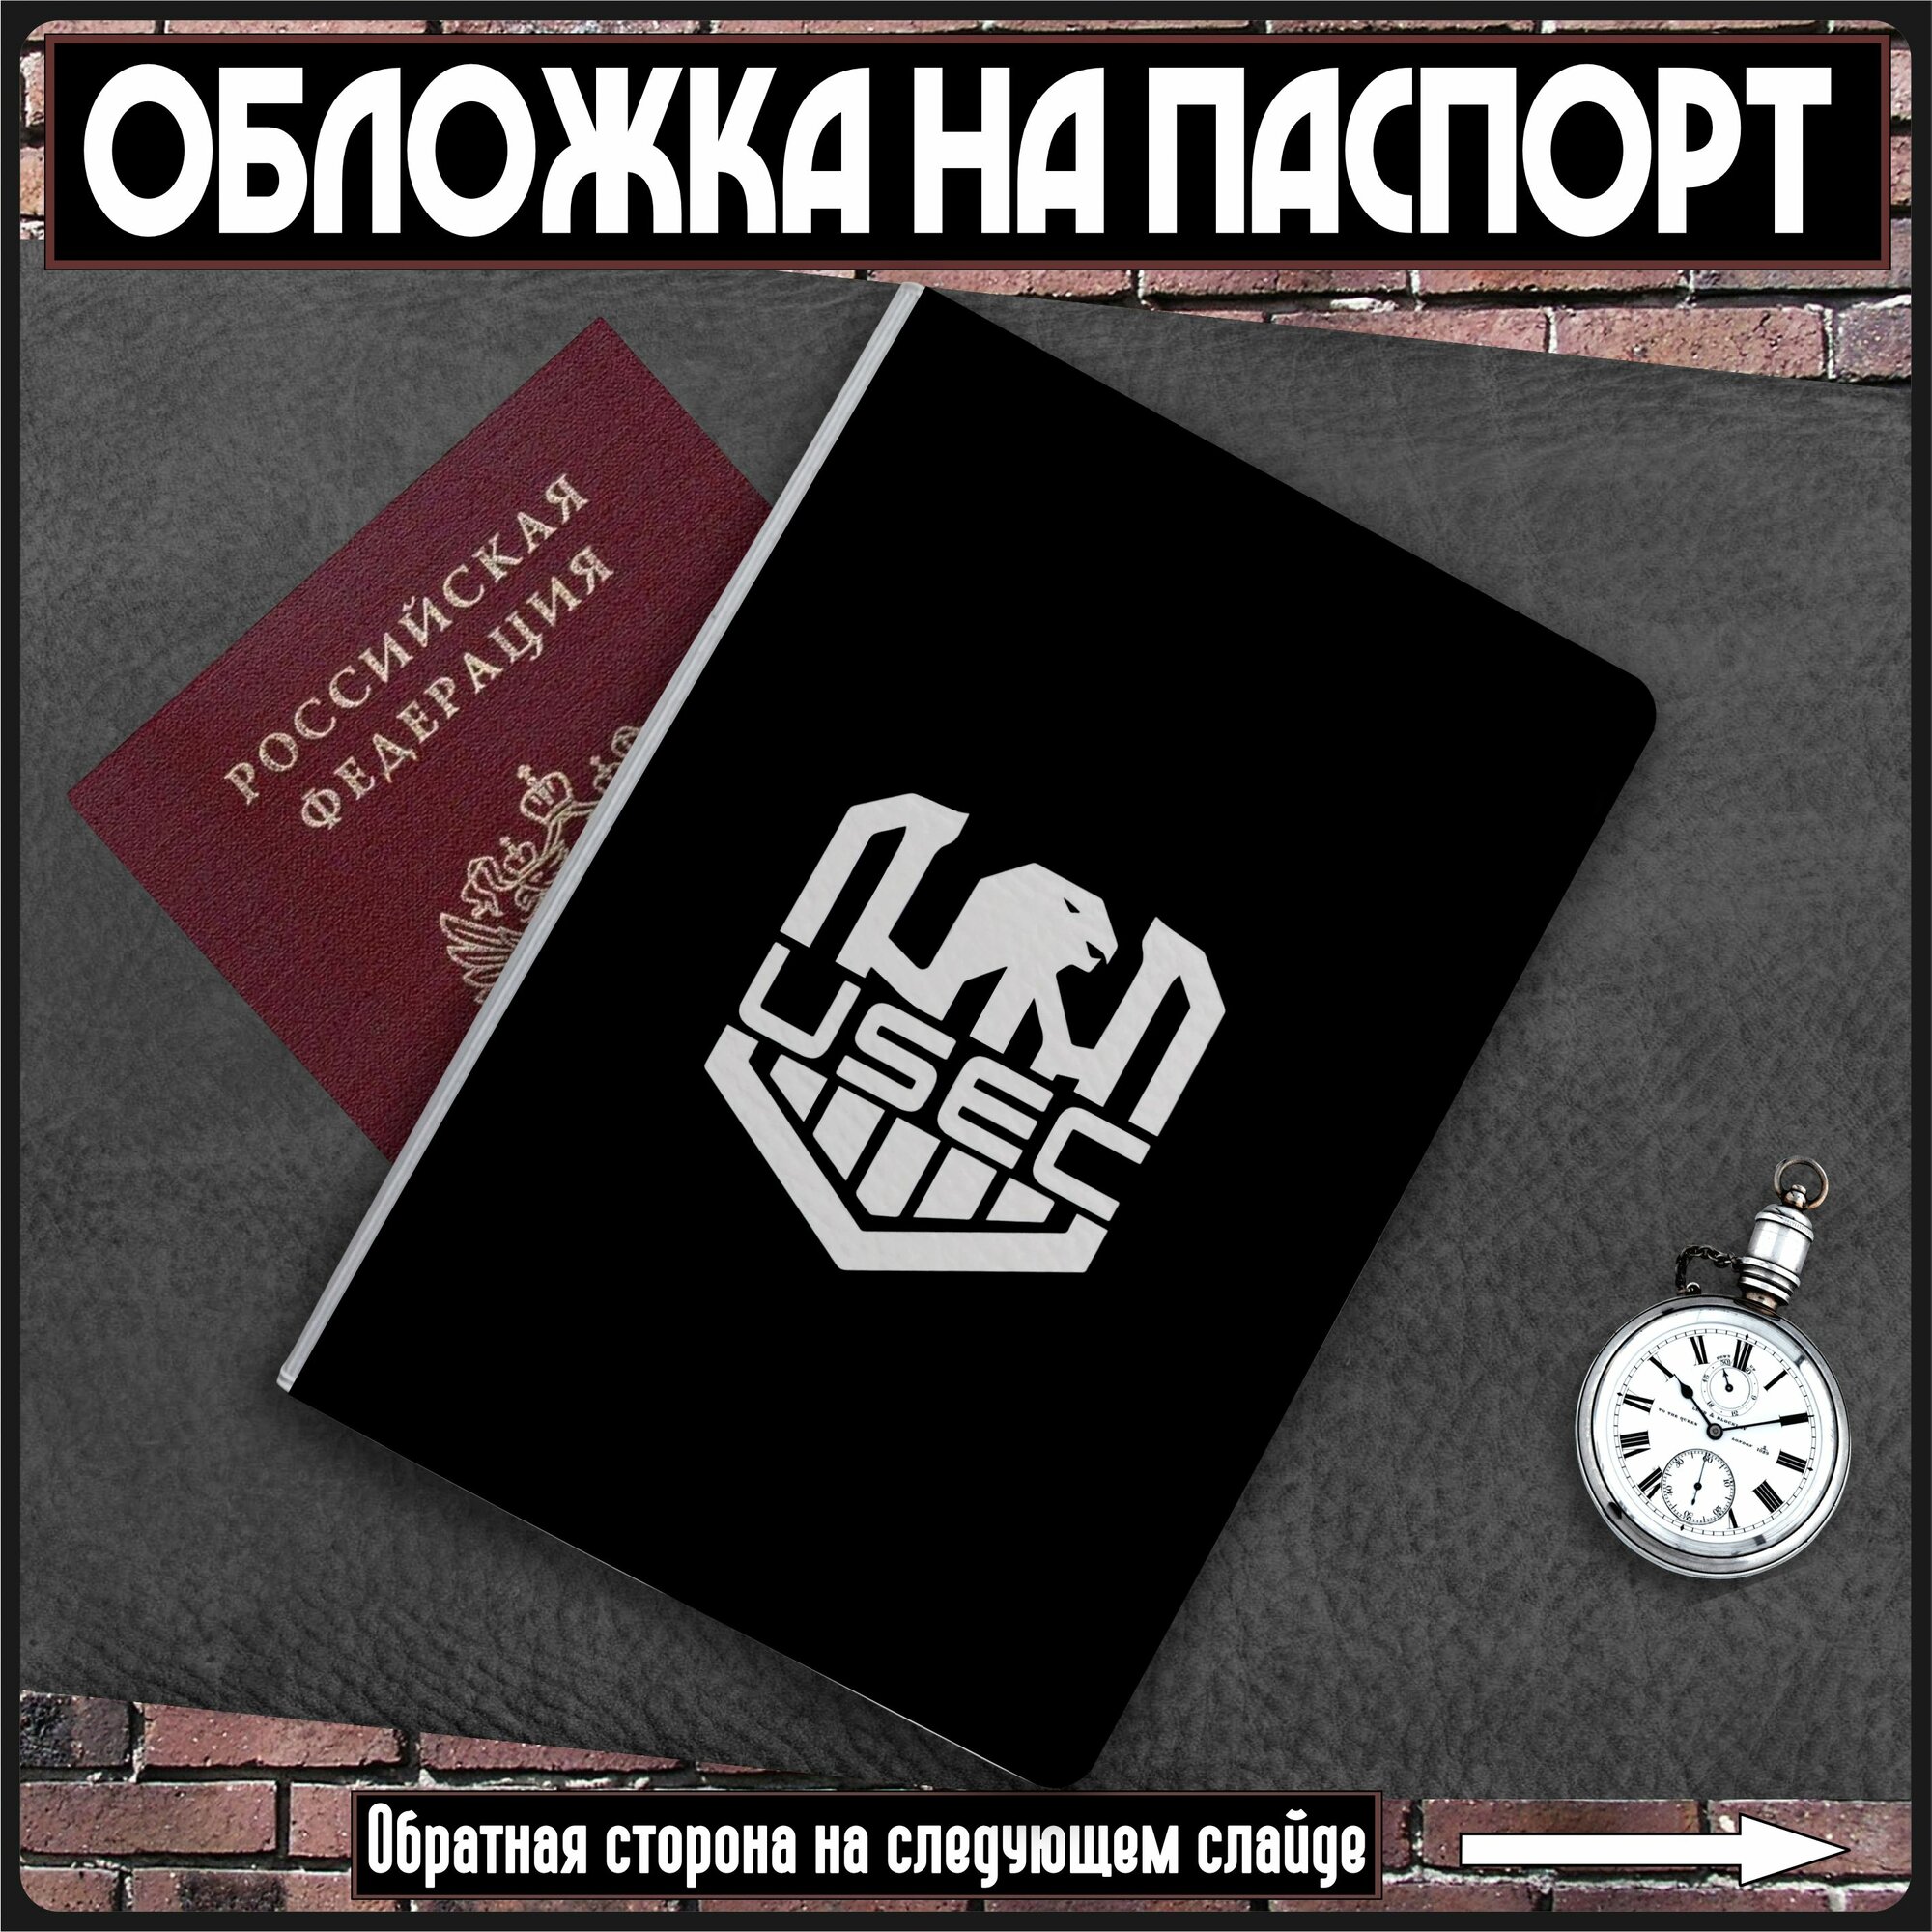 Обложка для паспорта KRASNIKOVA 